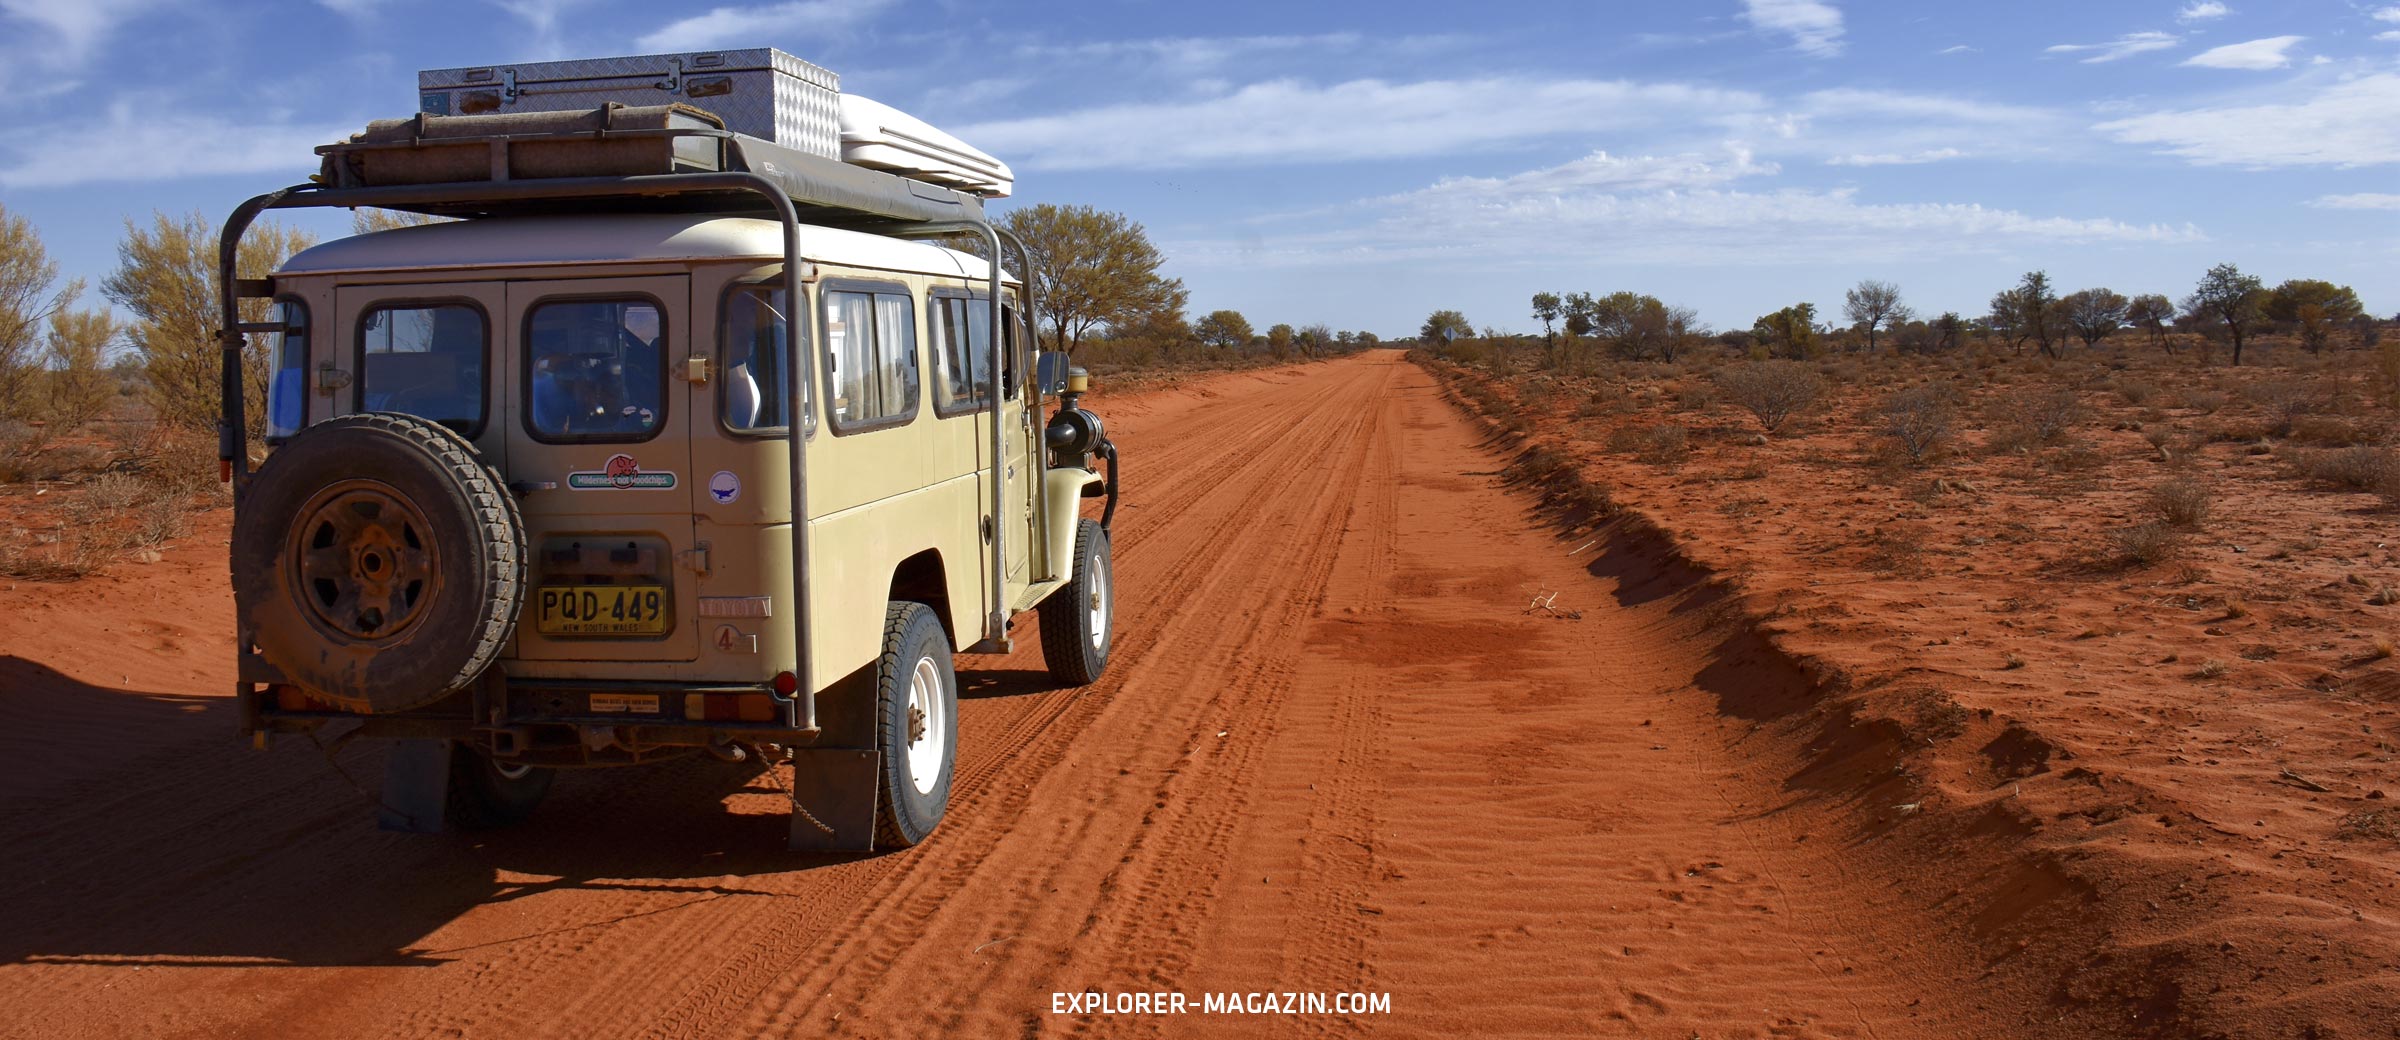 Australien Outback Offroad entdecken - Landcruiser